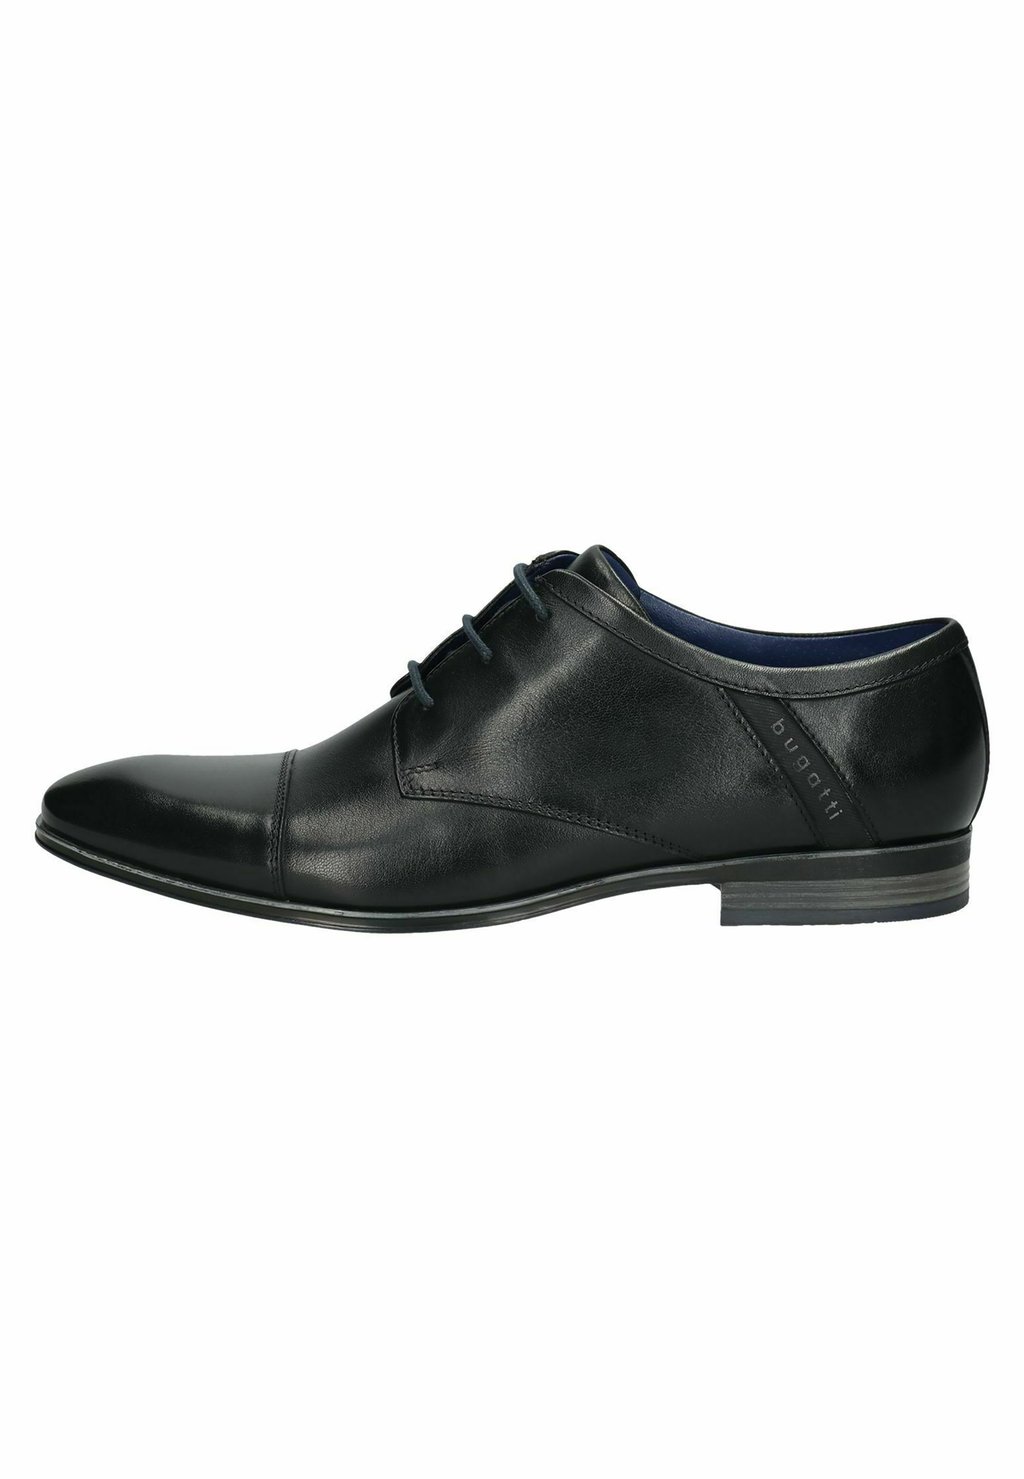 Деловые туфли на шнуровке bugatti, цвет schwarz